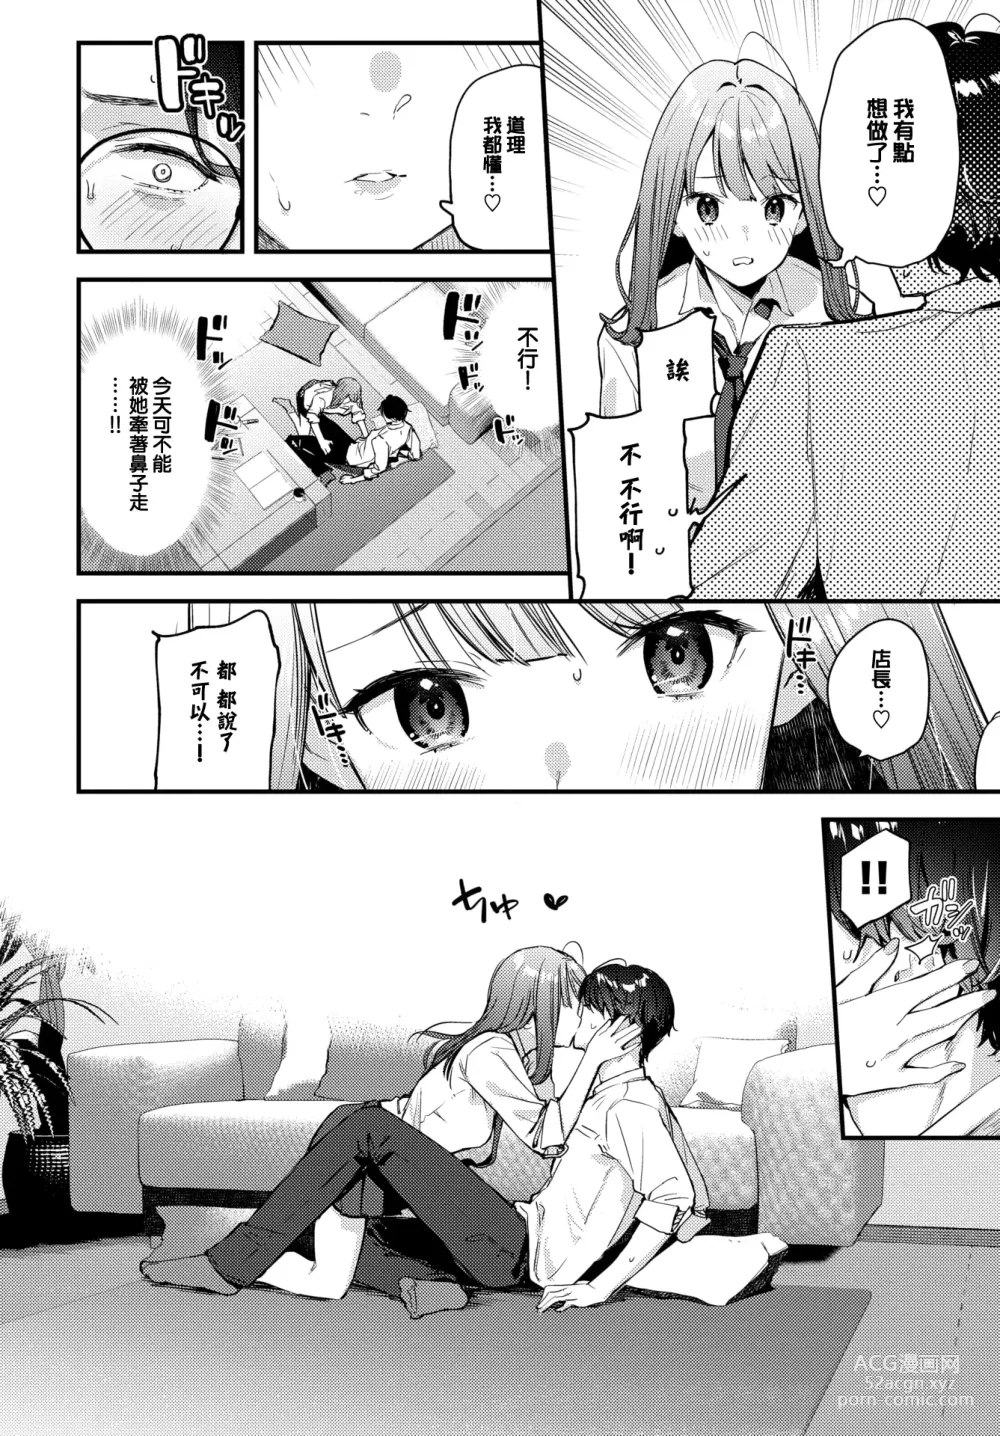 Page 7 of manga Bokudake no Hana ~Jouhen~